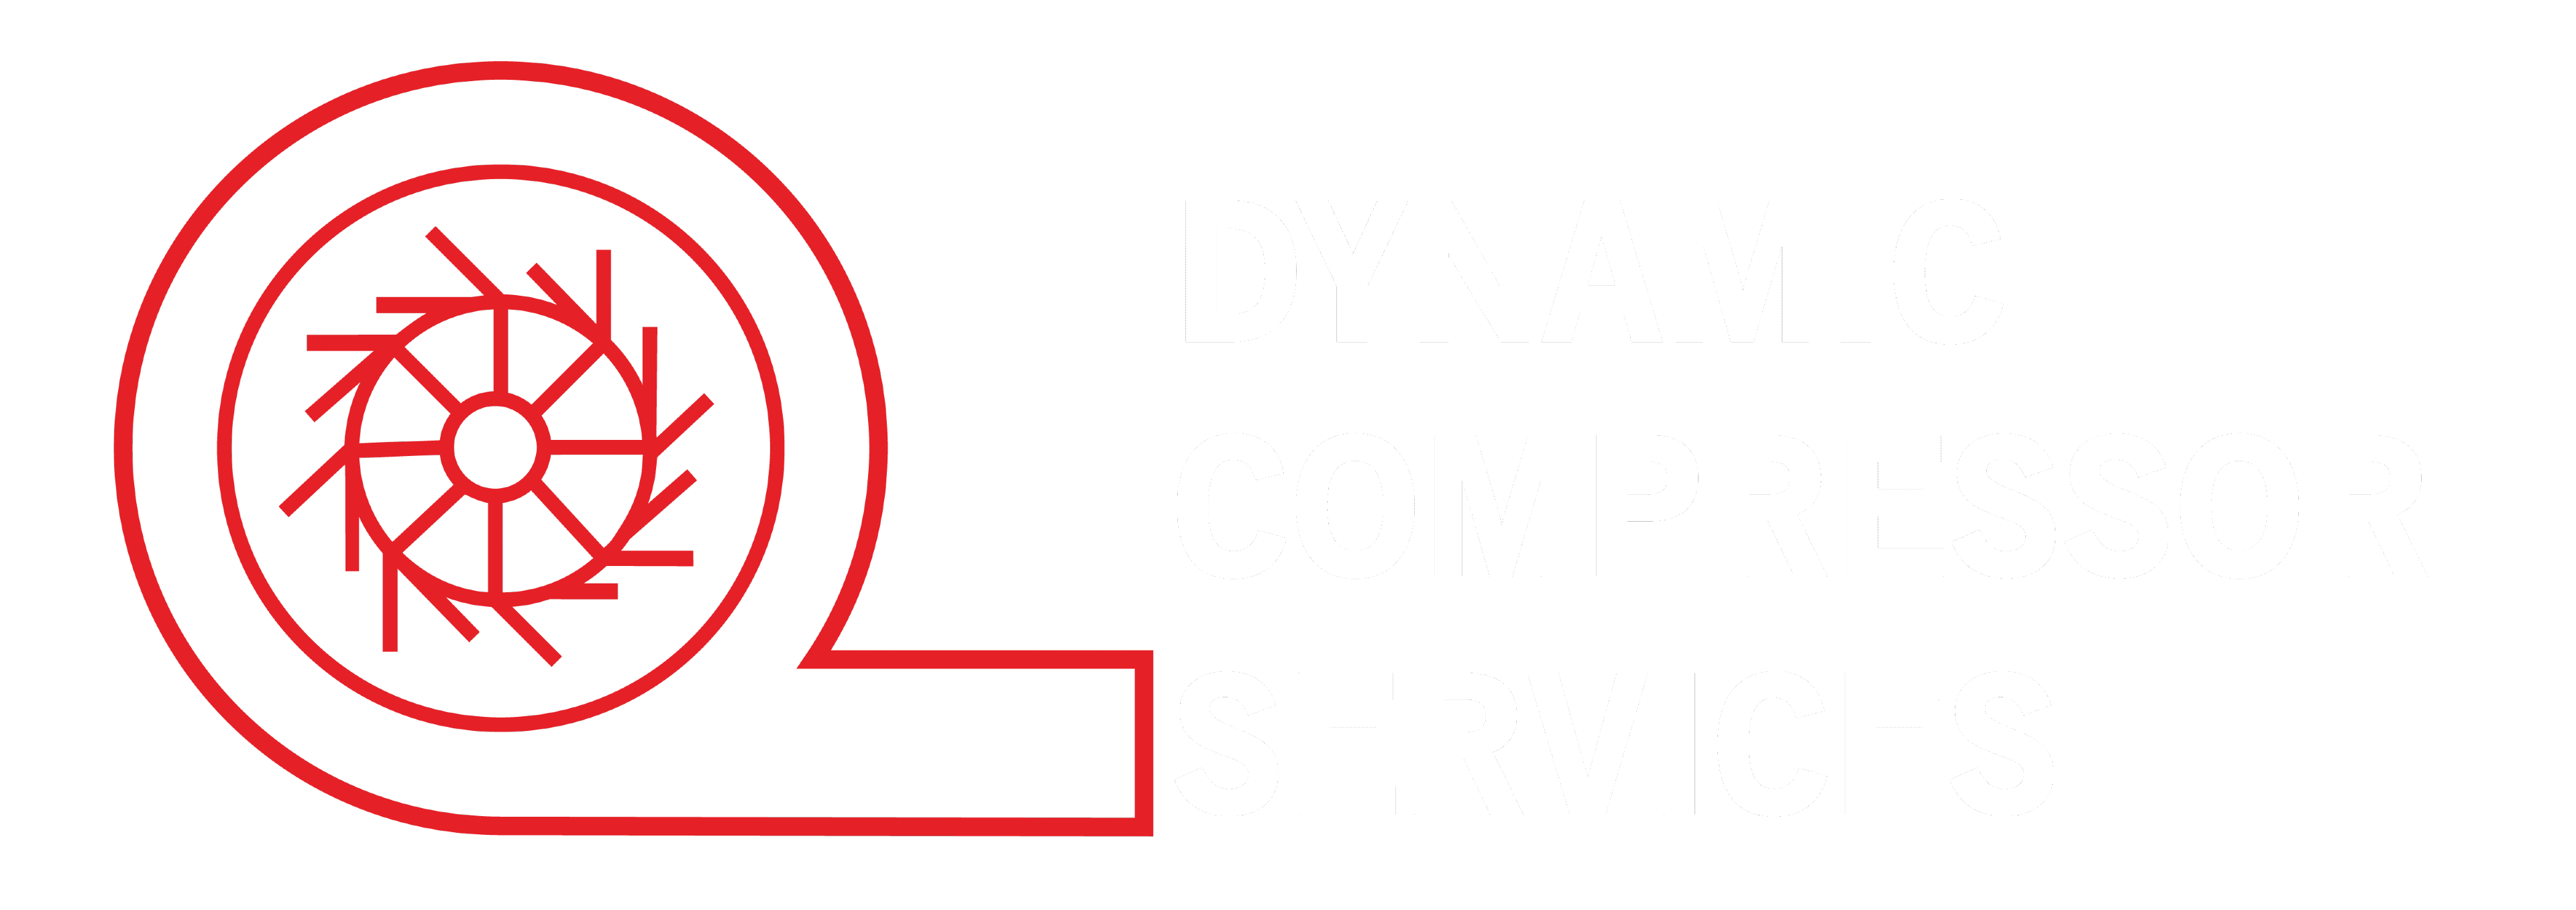 Dynamic Compressor